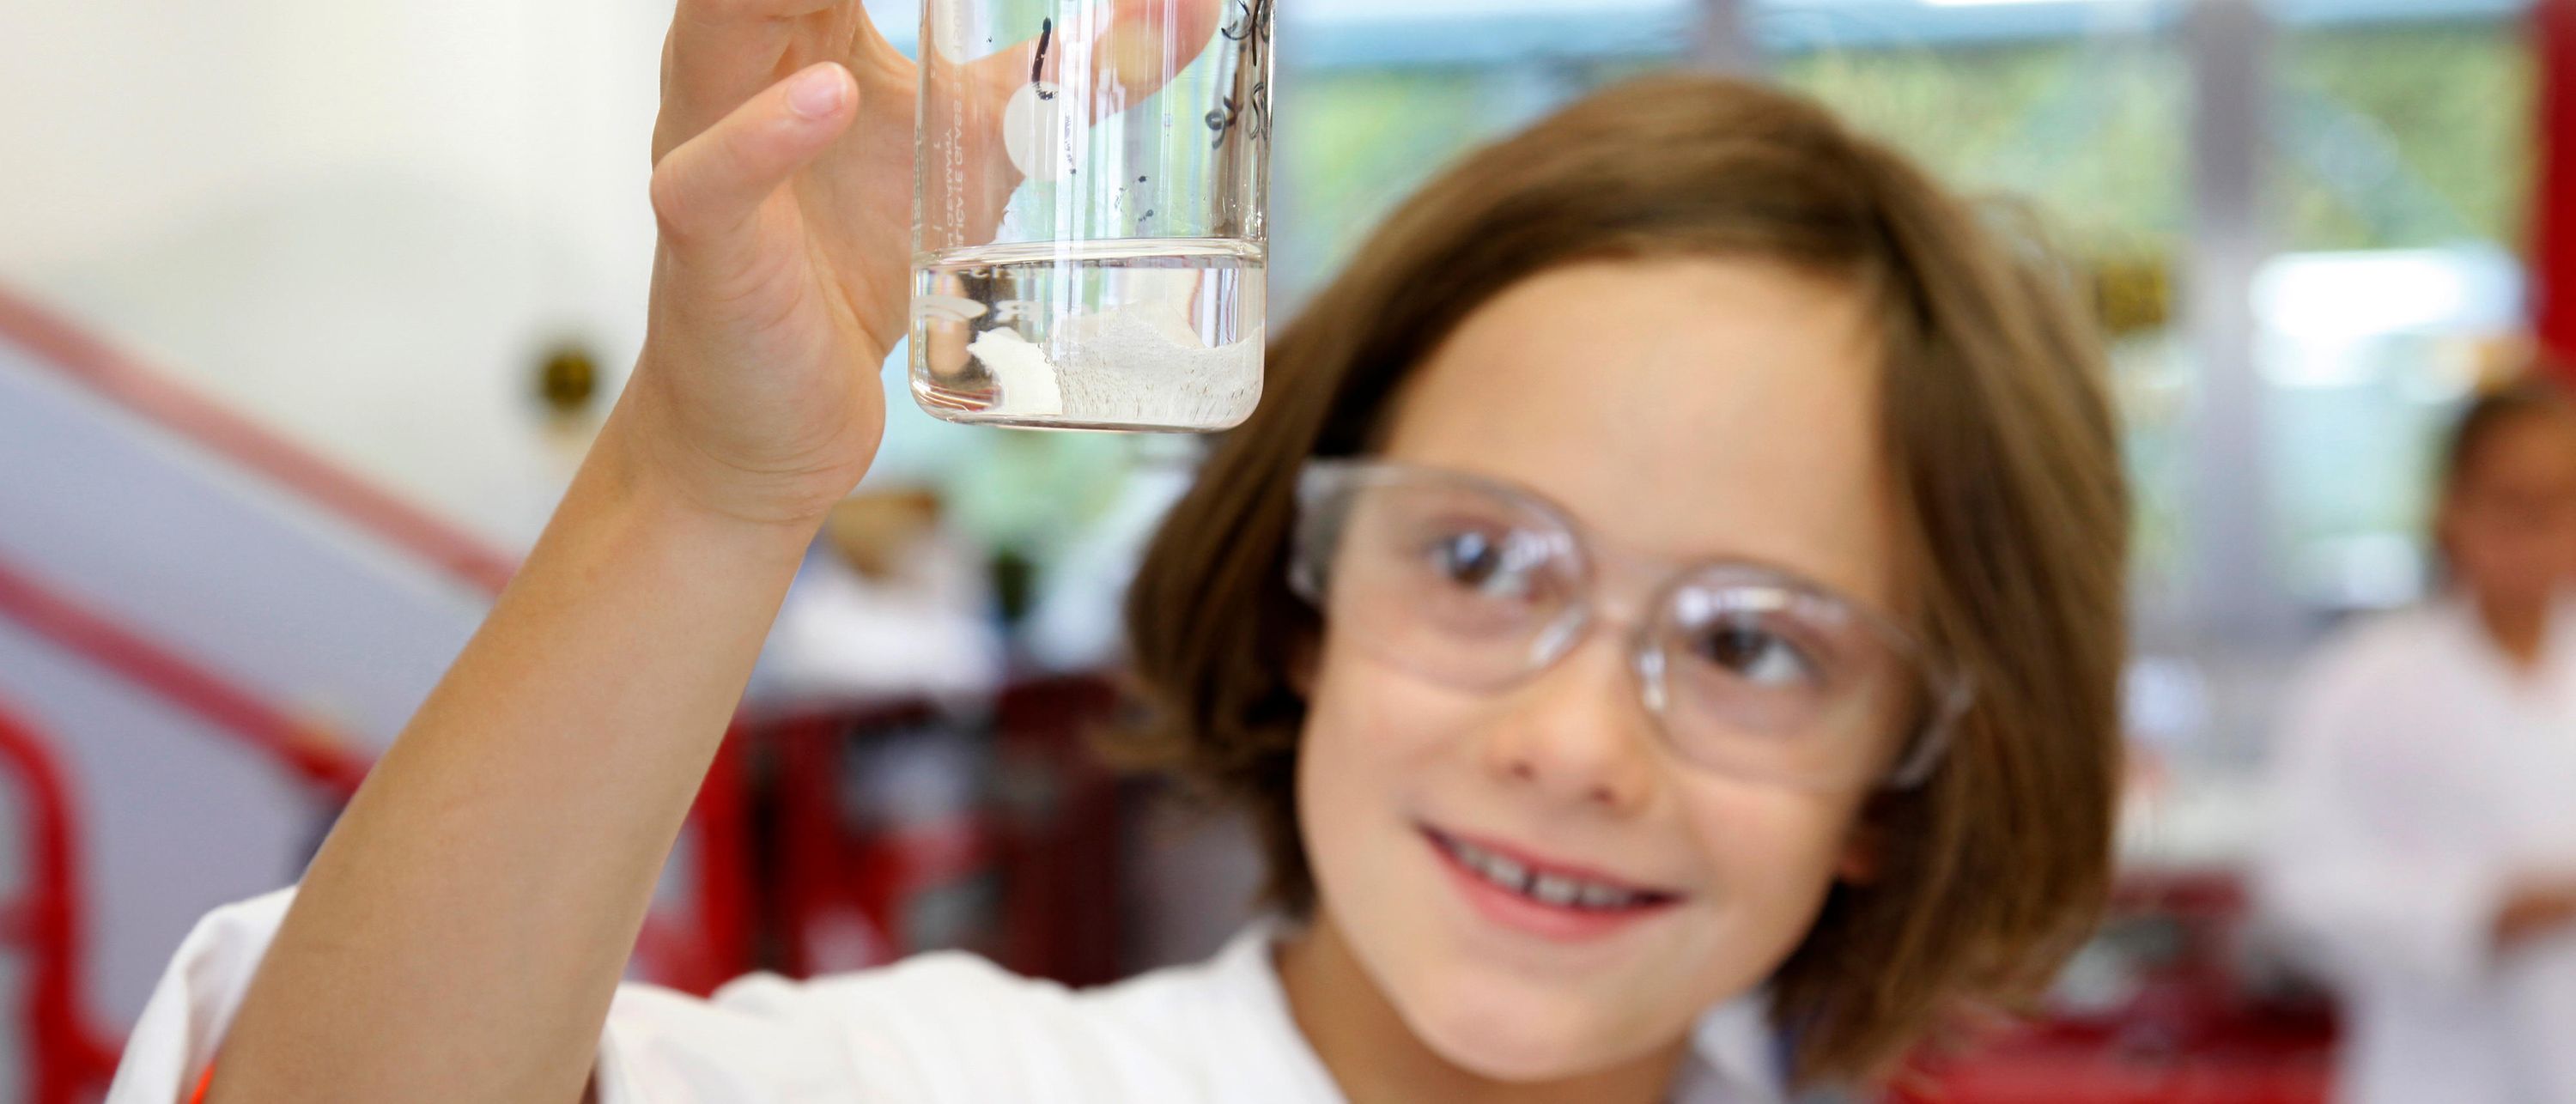 girl in lab coat looks at liquid in beaker